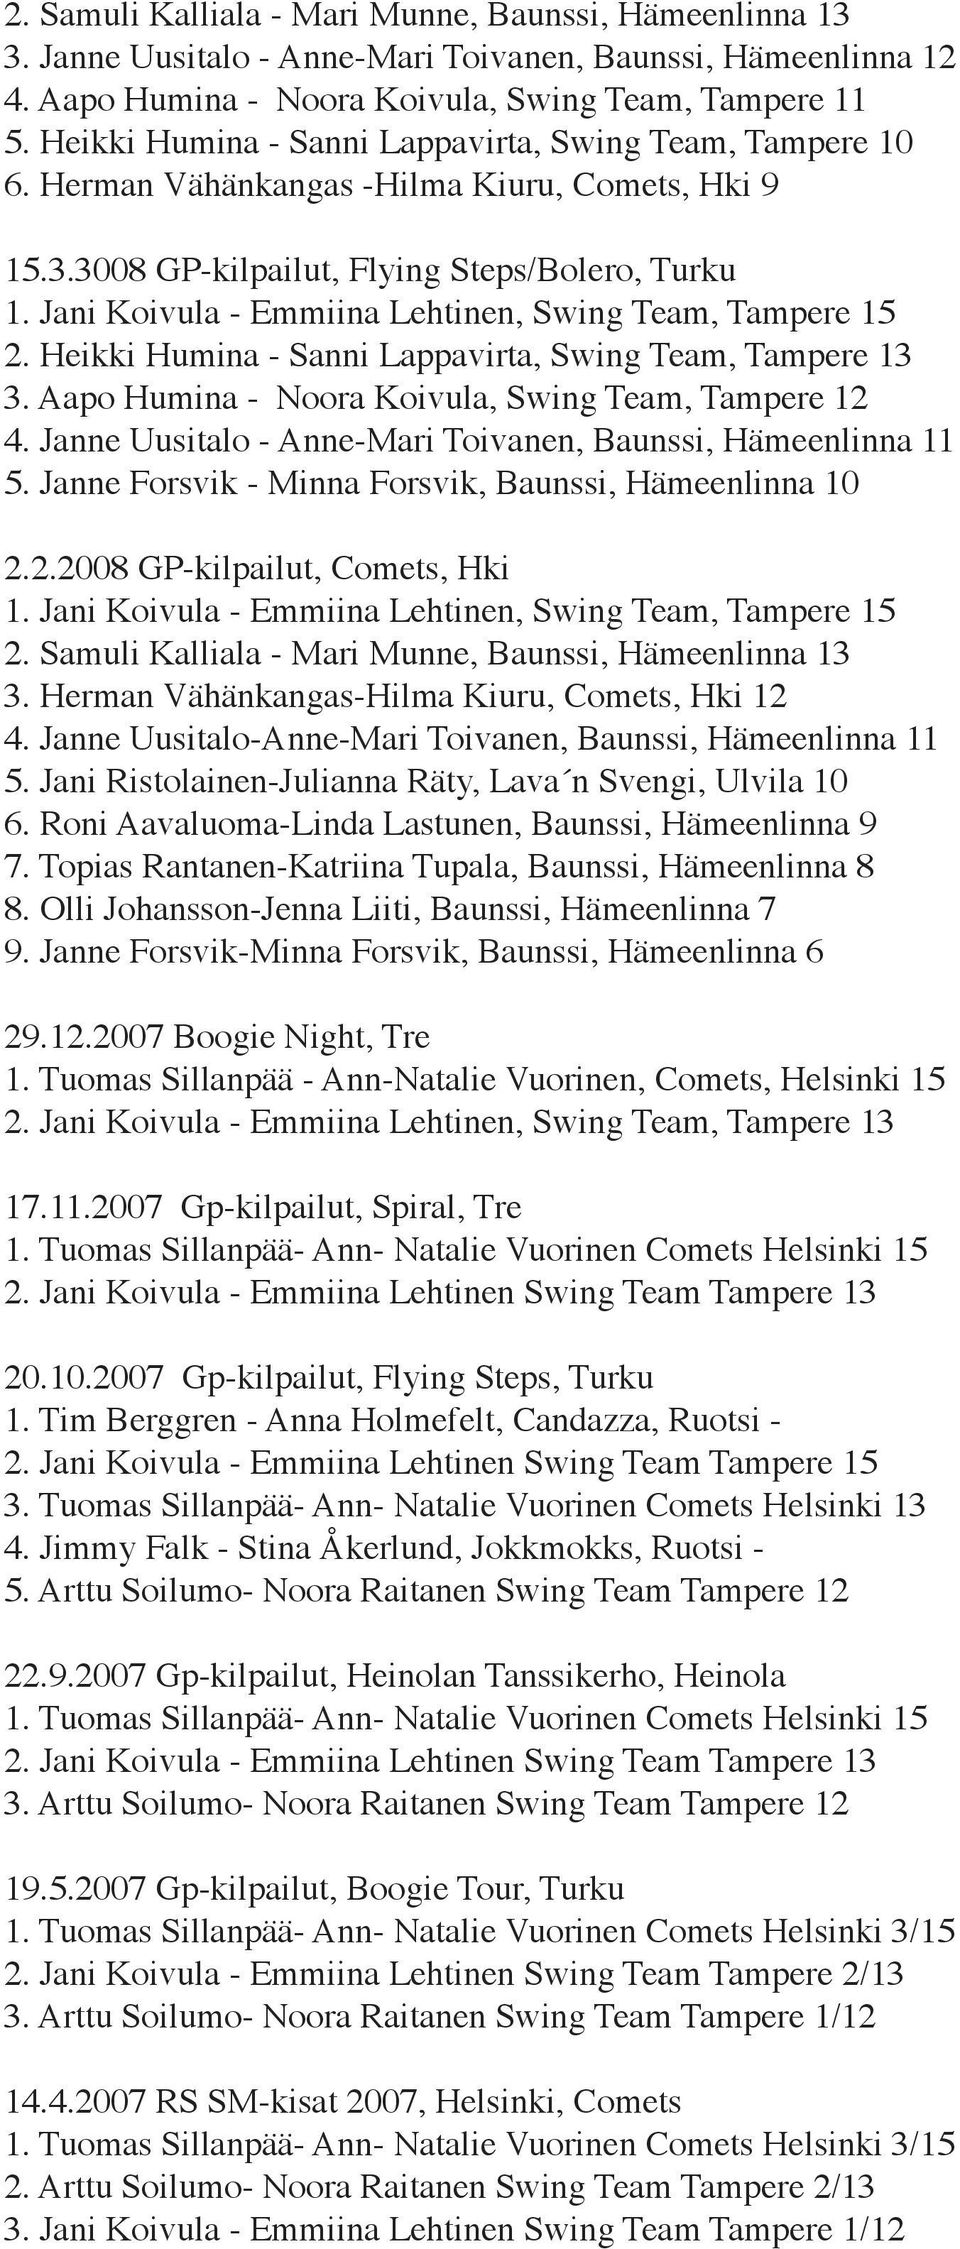 Aapo Humina - Noora Koivula, Swing Team, Tampere 12 4. Janne Uusitalo - Anne-Mari Toivanen, Baunssi, Hämeenlinna 11 5. Janne Forsvik - Minna Forsvik, Baunssi, Hämeenlinna 10 2.2.2008 GP-kilpailut, Comets, Hki 3.